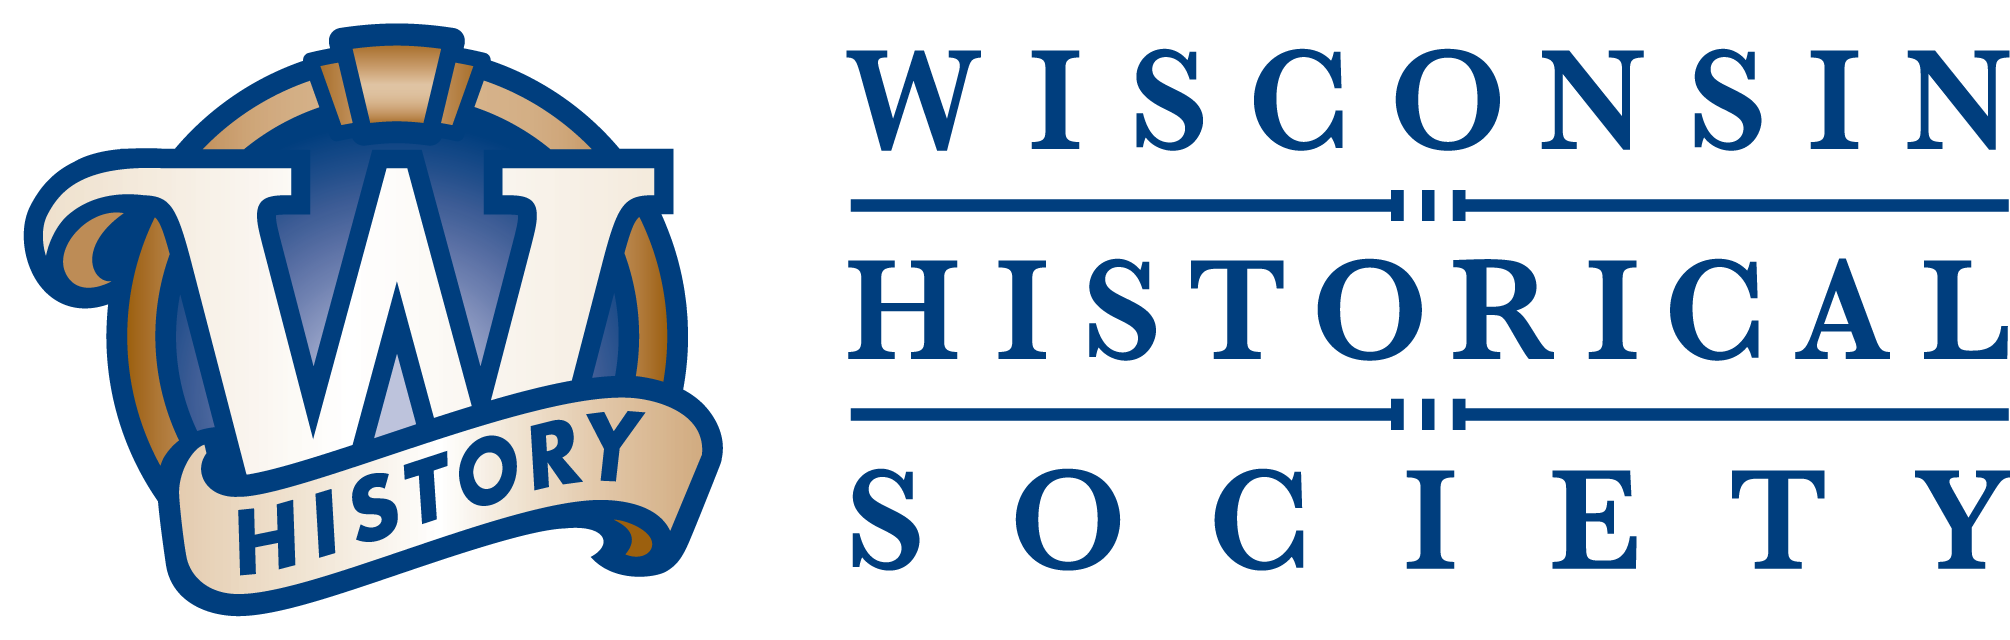 Wisconsin Historical Society - Logo